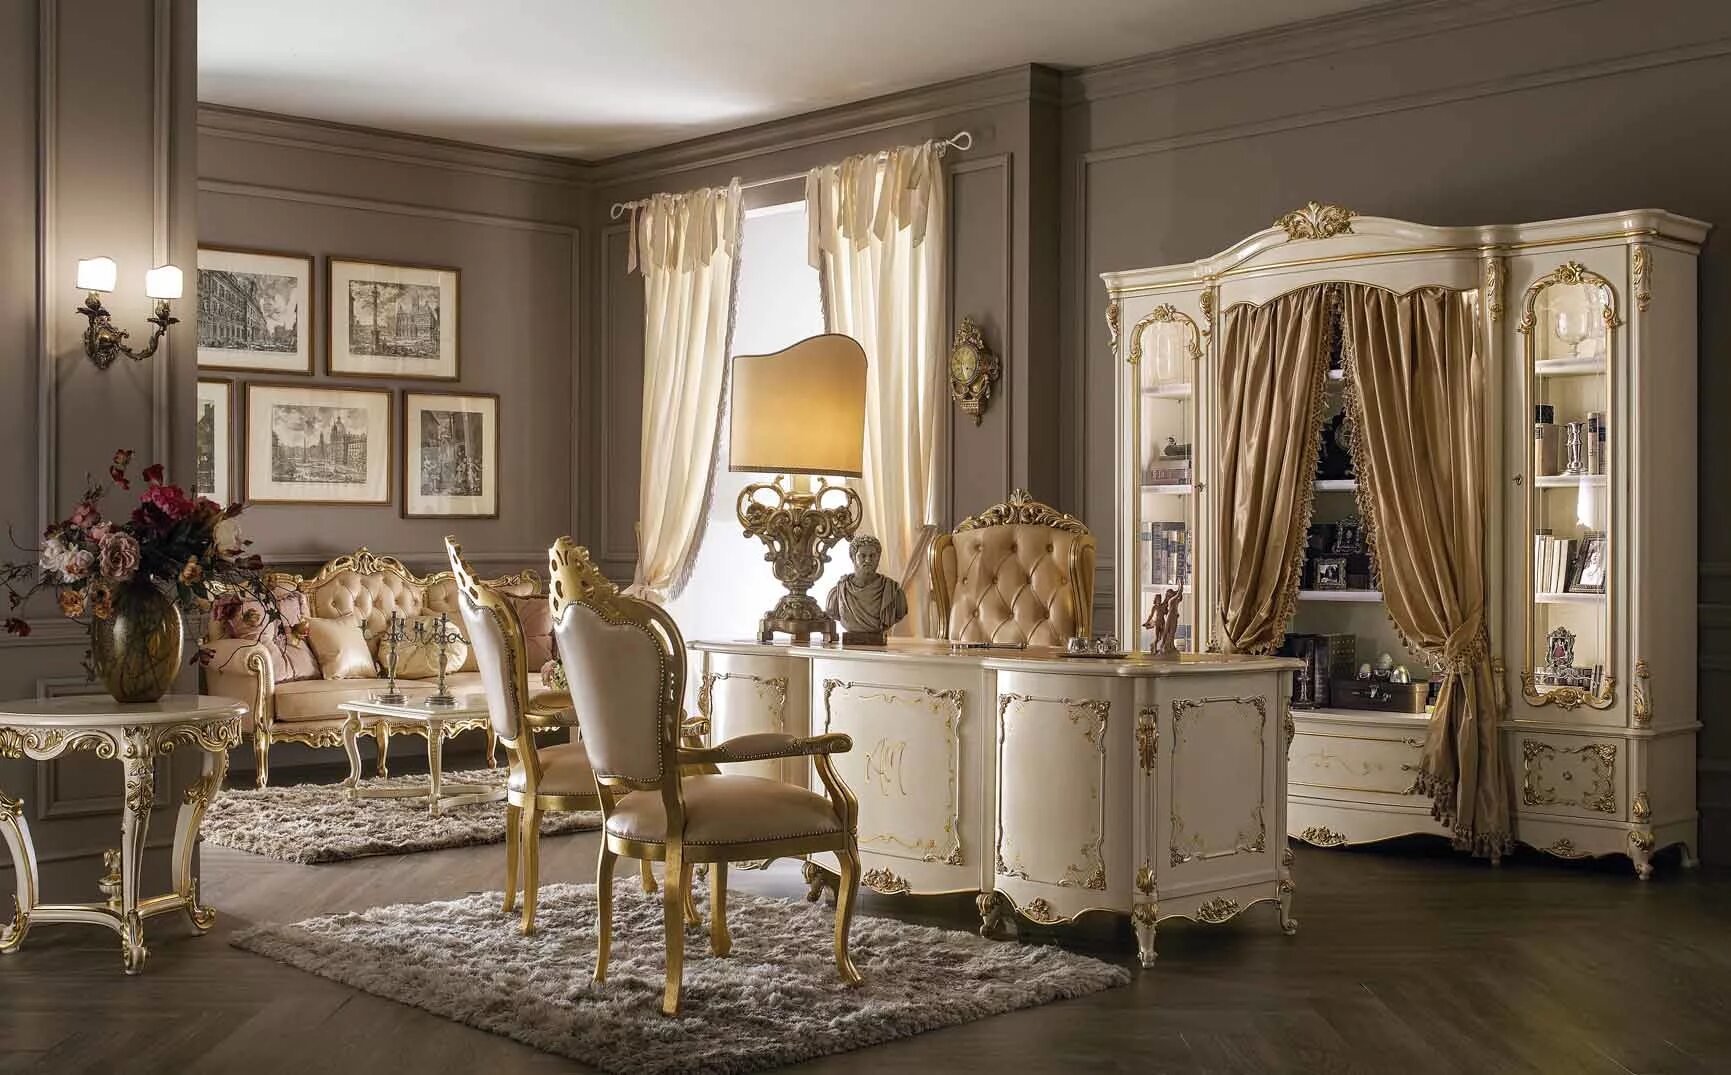 Сайт мебель италии. Кресло AGM (Alberto e Mario Ghezzani). Элитная итальянская мебель. Элитная классическая мебель. Мебель в итальянском стиле.